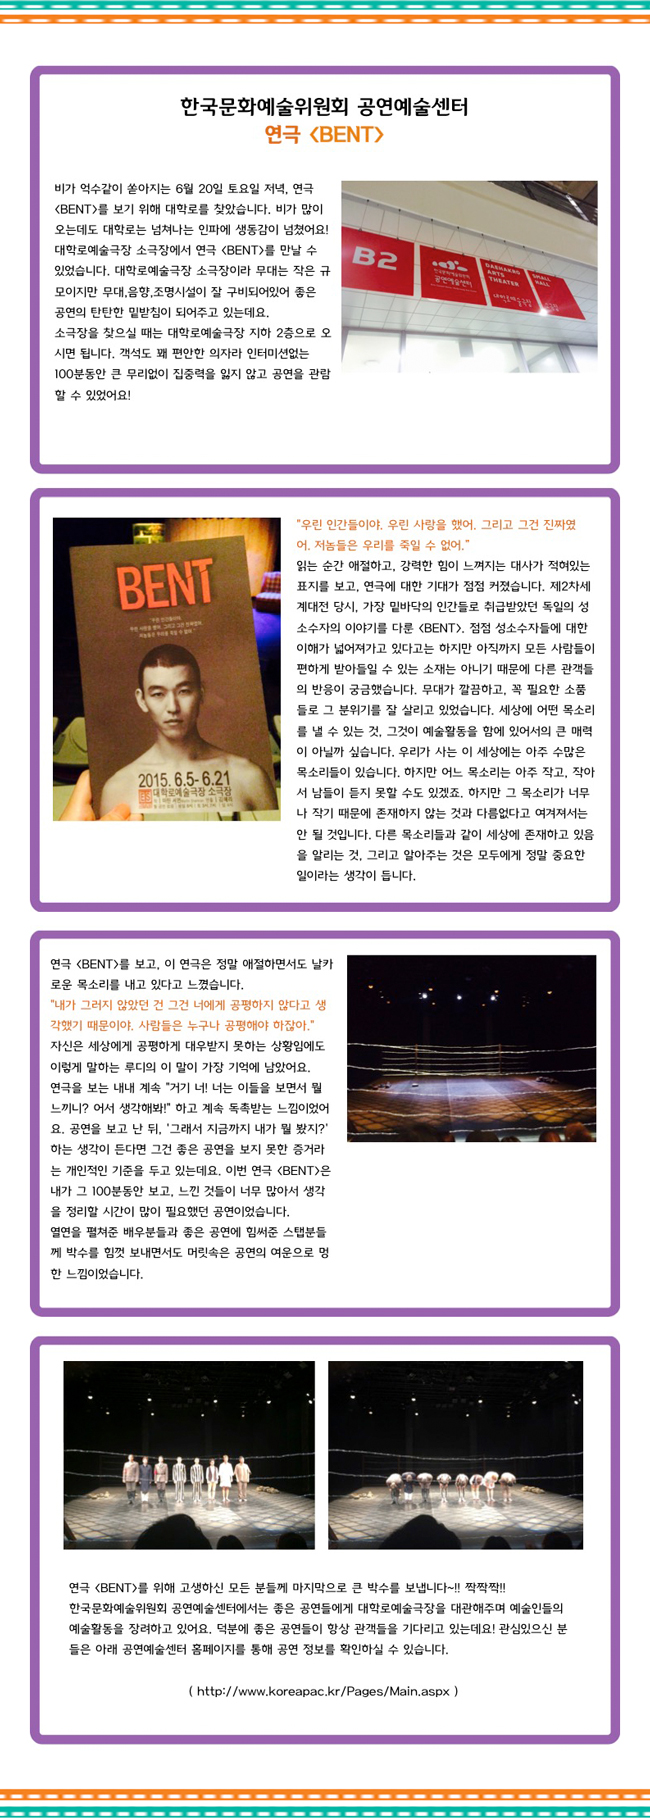 한국문화예술위원회 공연예술센터 연극 [BENT]